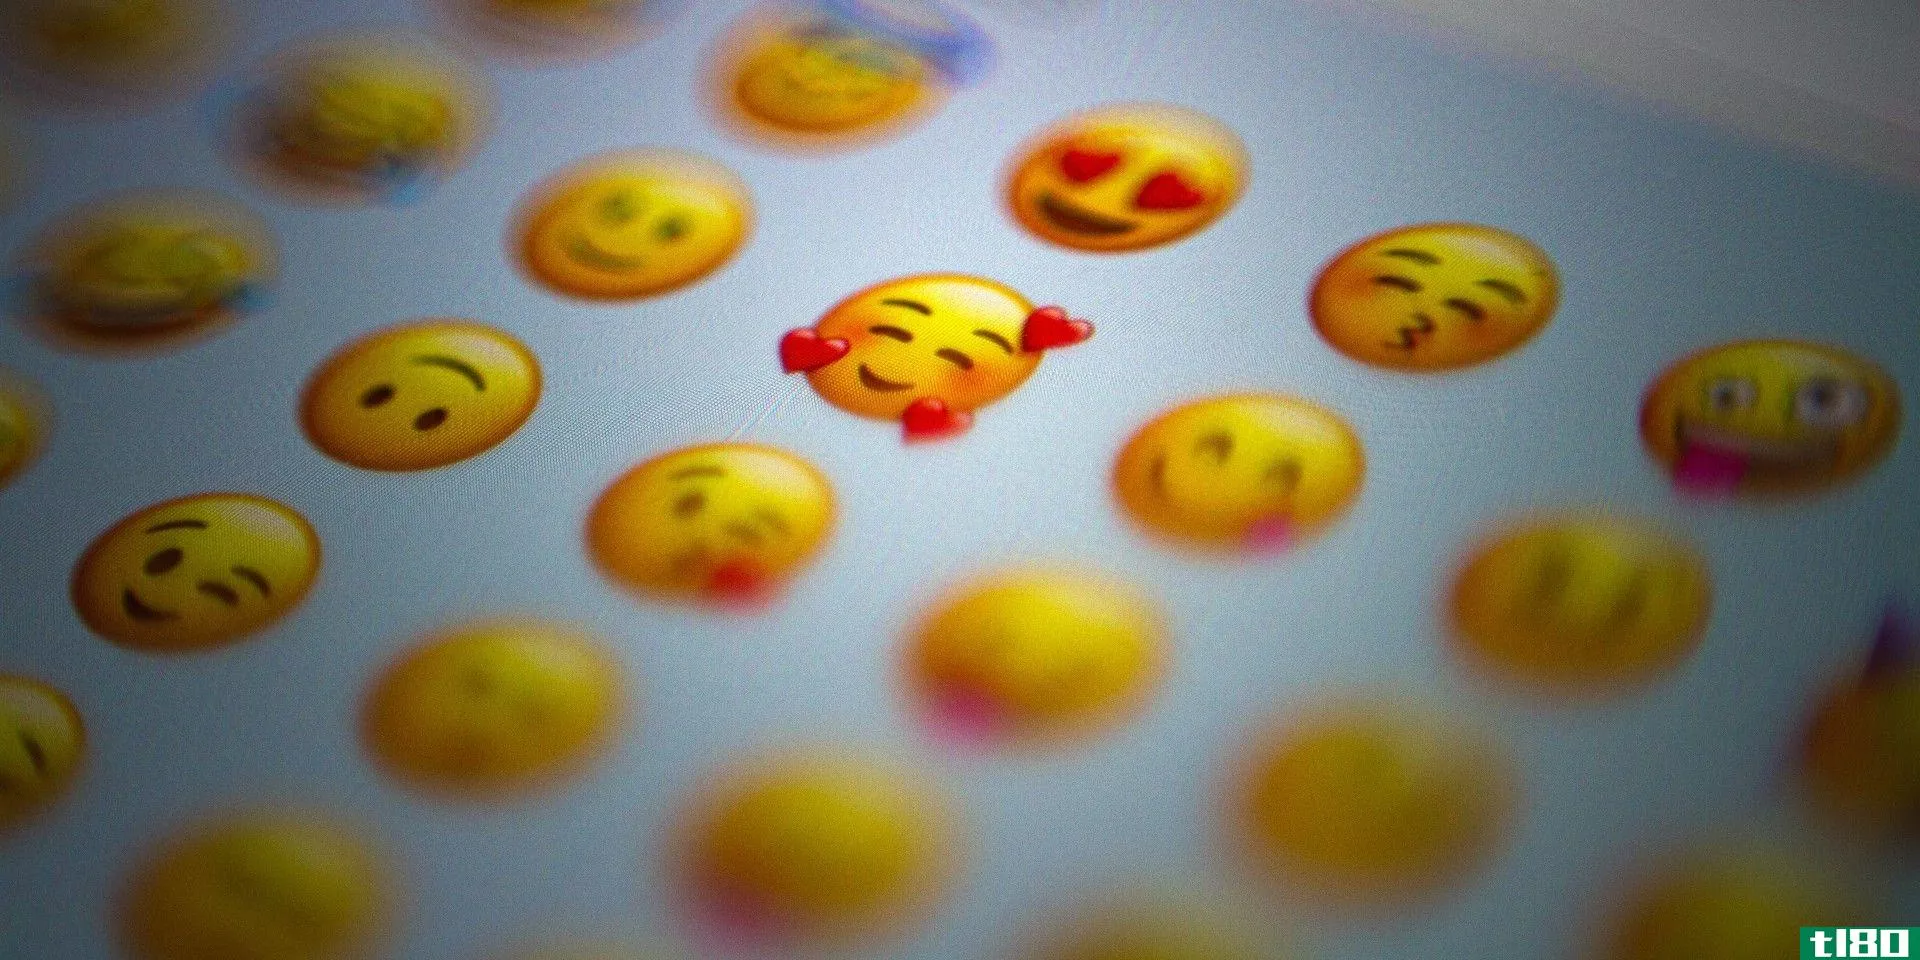 using too many emojis